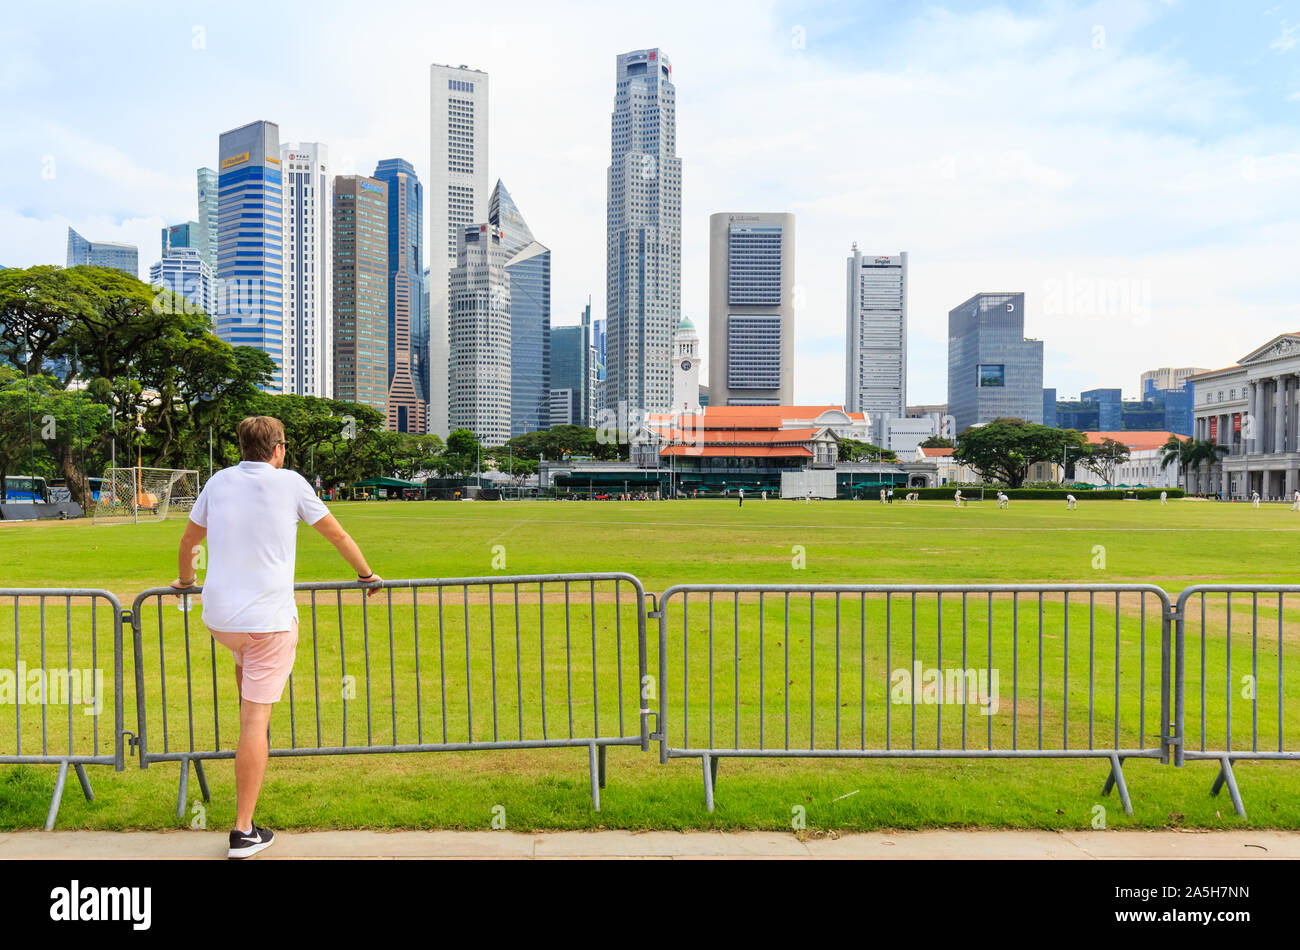 Singapore-05 MAY 2018:Singapore CBD area skyline with big lawn Stock Photo